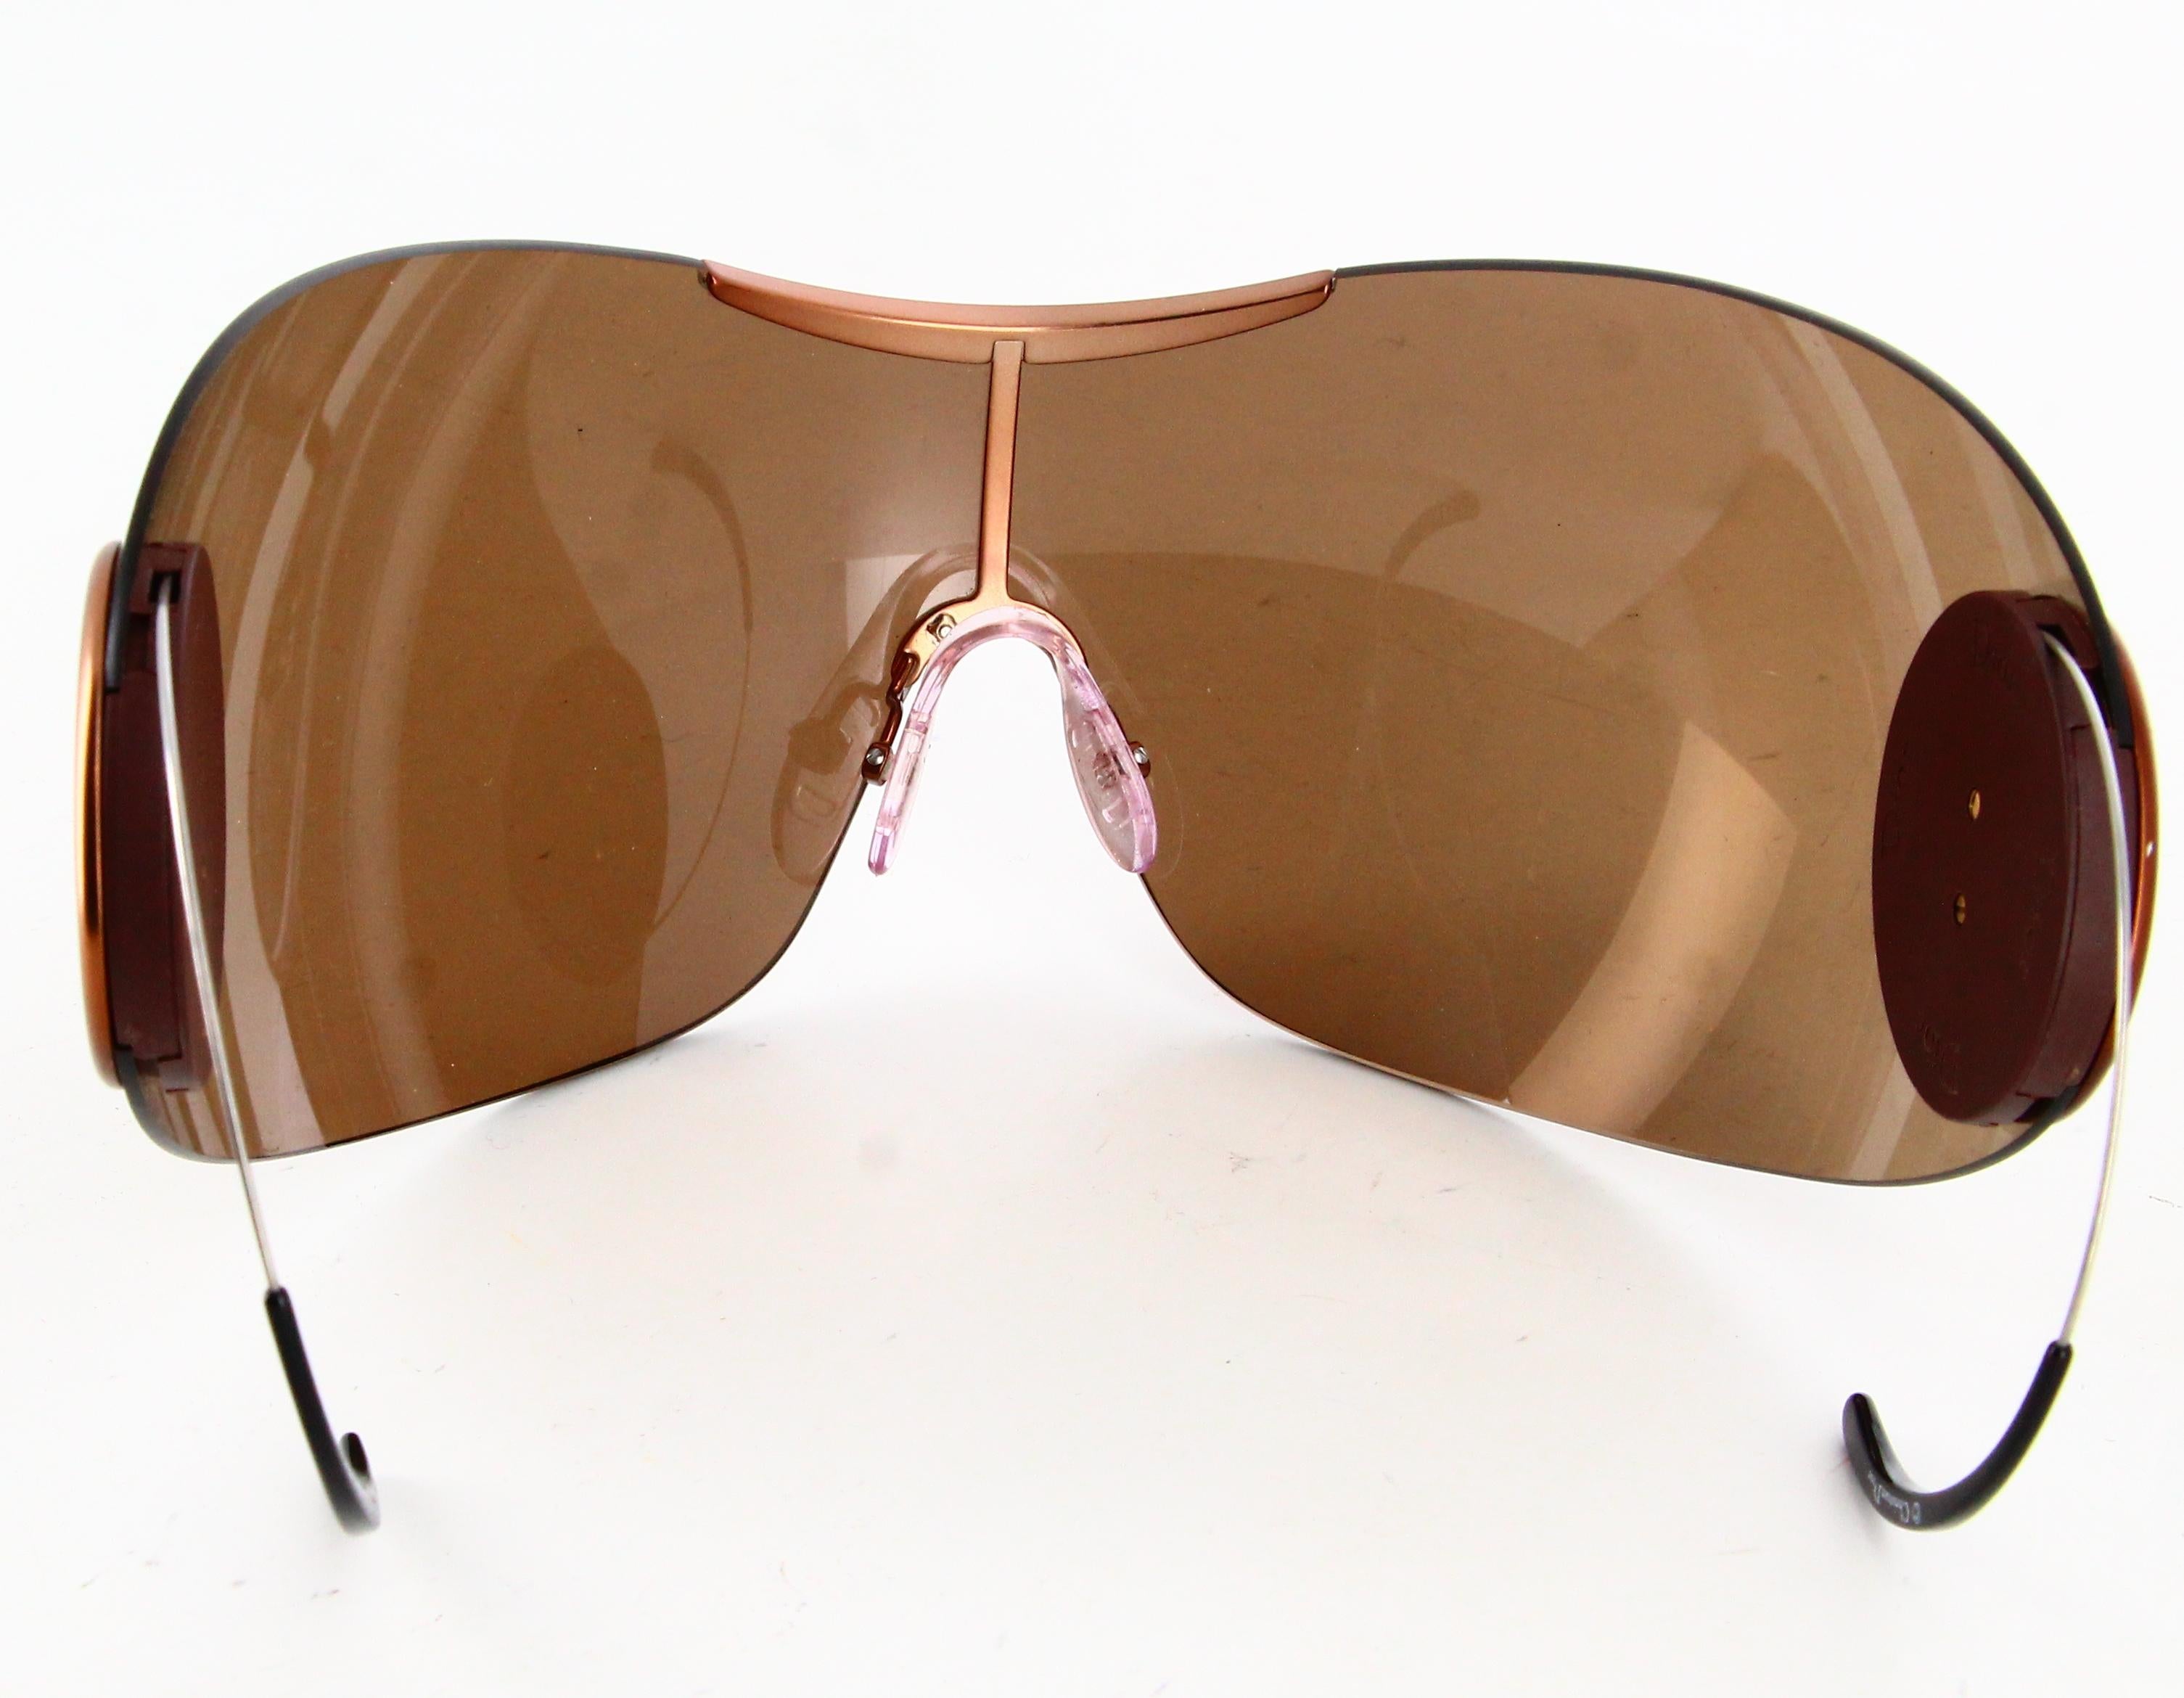 2000's Große Christian Dior Sonnenbrille von Jonh Galliano 

- Sehr guter Zustand. Zeigt im Laufe der Zeit sehr leichte Abnutzungserscheinungen.
- Bigli Christian Dior Sonnenbrille 
- Braune Farbe 
- Logo an der Seite Dior
- dünner Griff